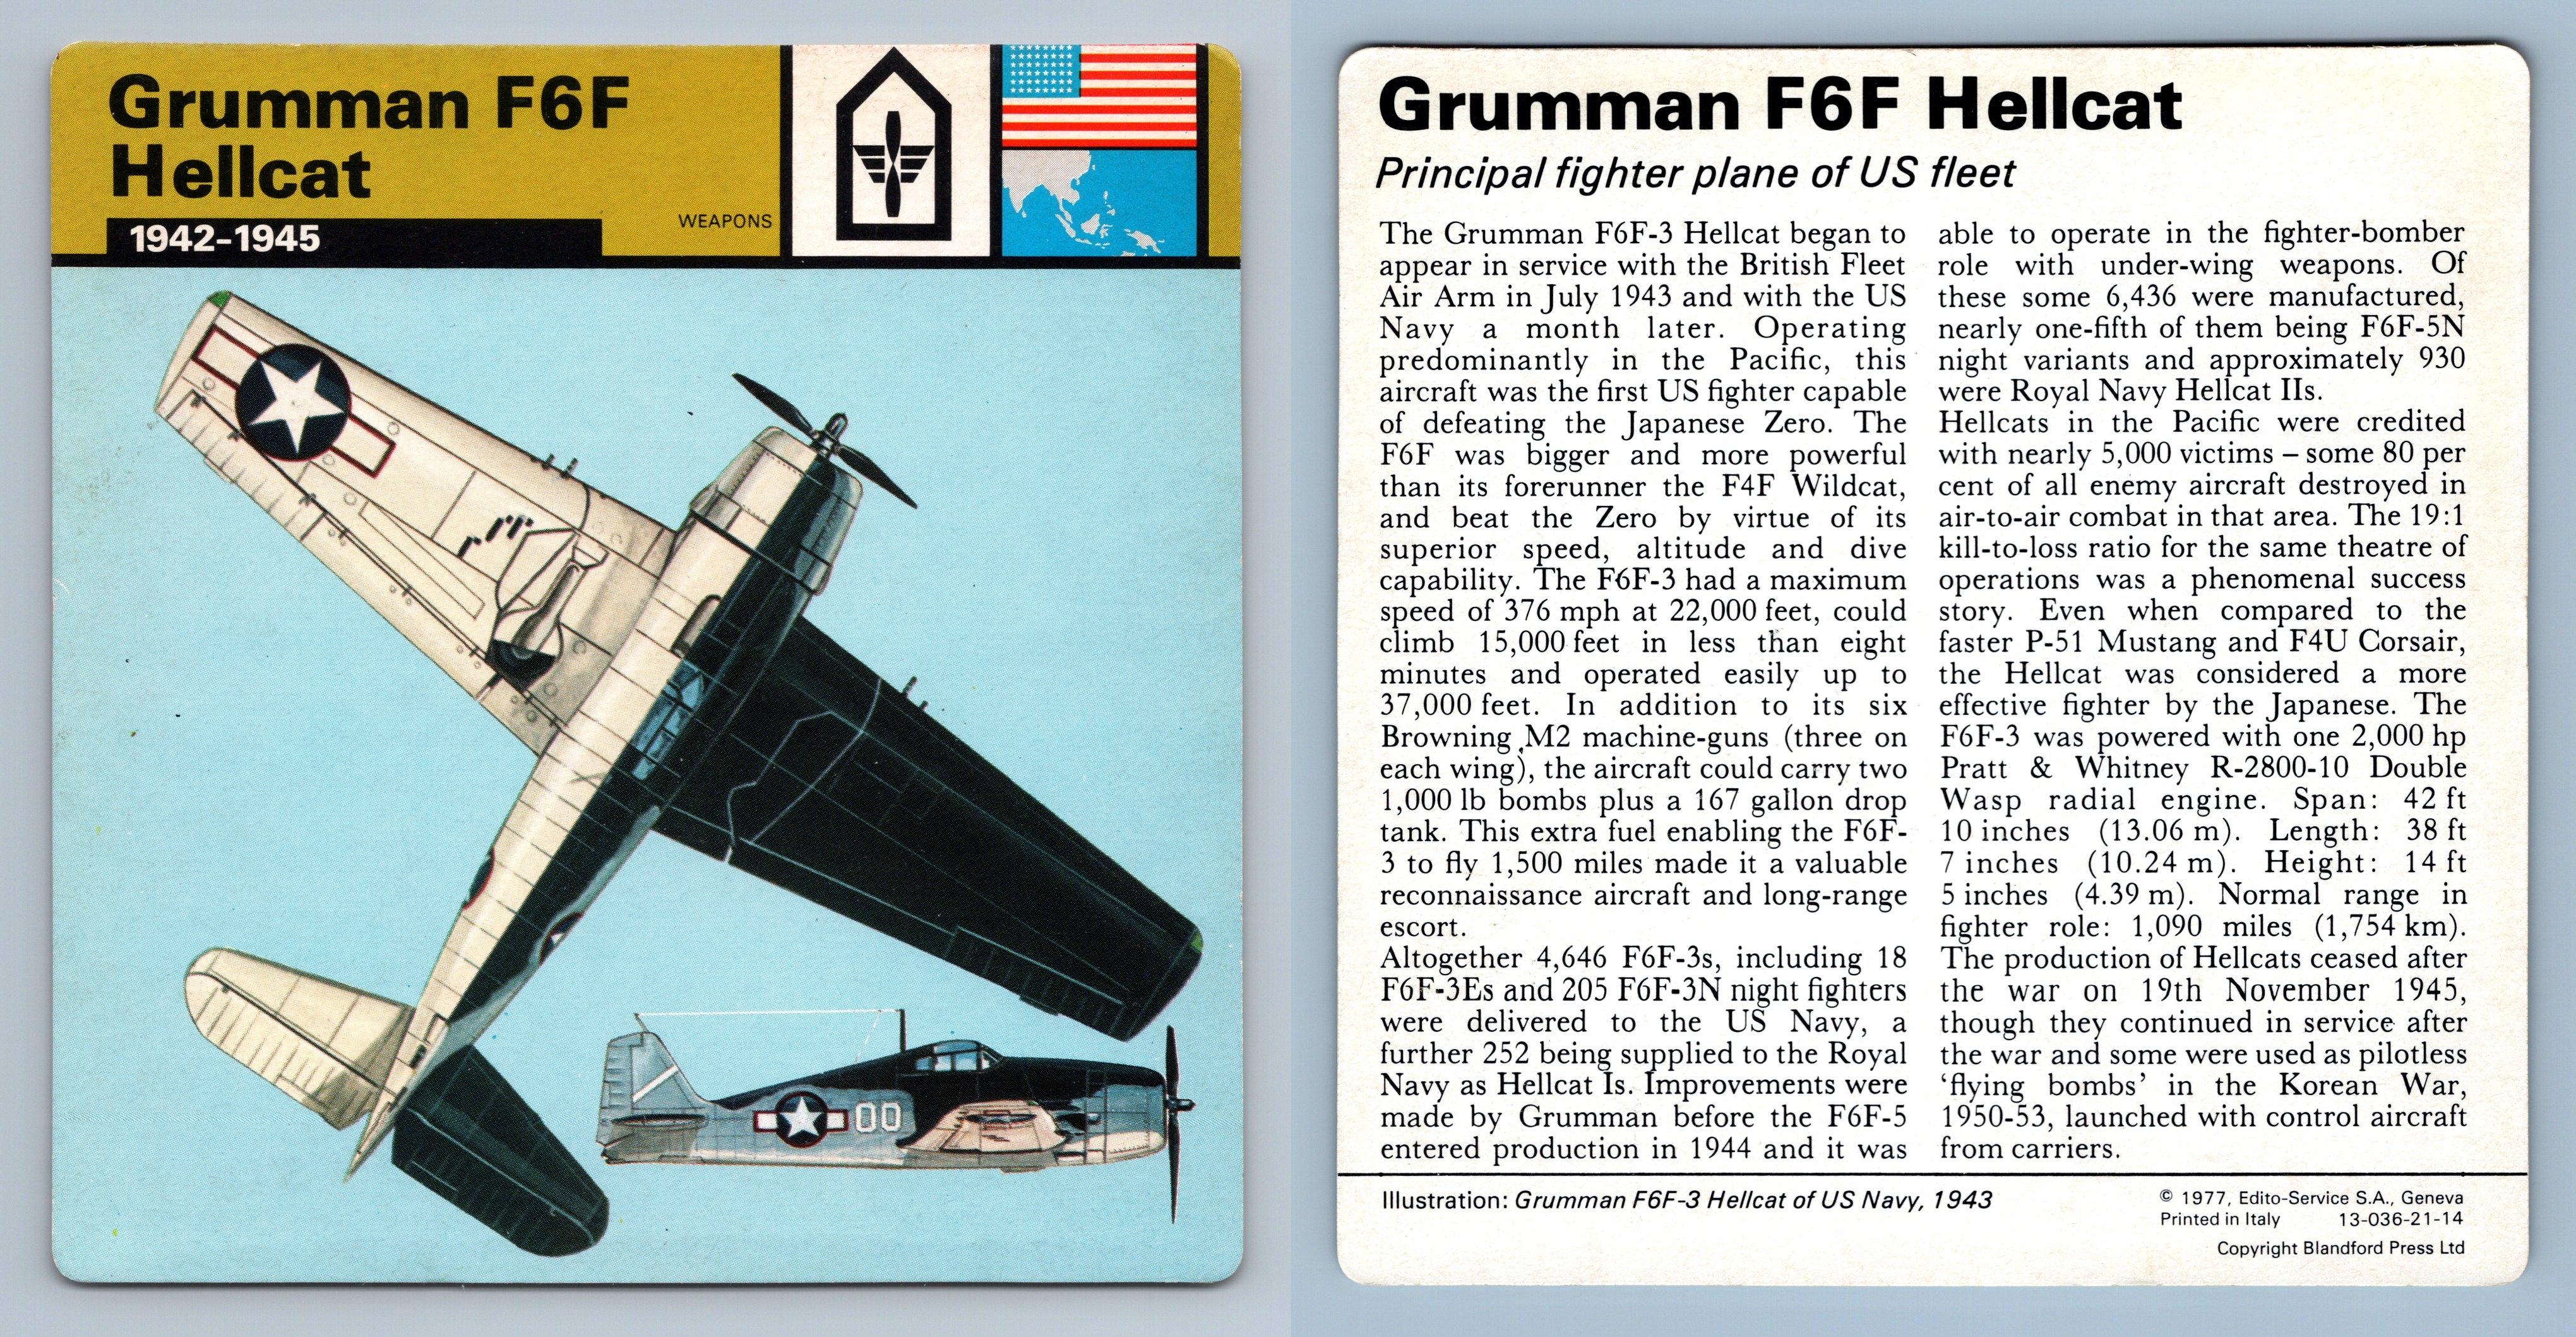 Grumman F6F Hellcat 1942-45 WW2 Edito-Service SA 1977 Card Weapons